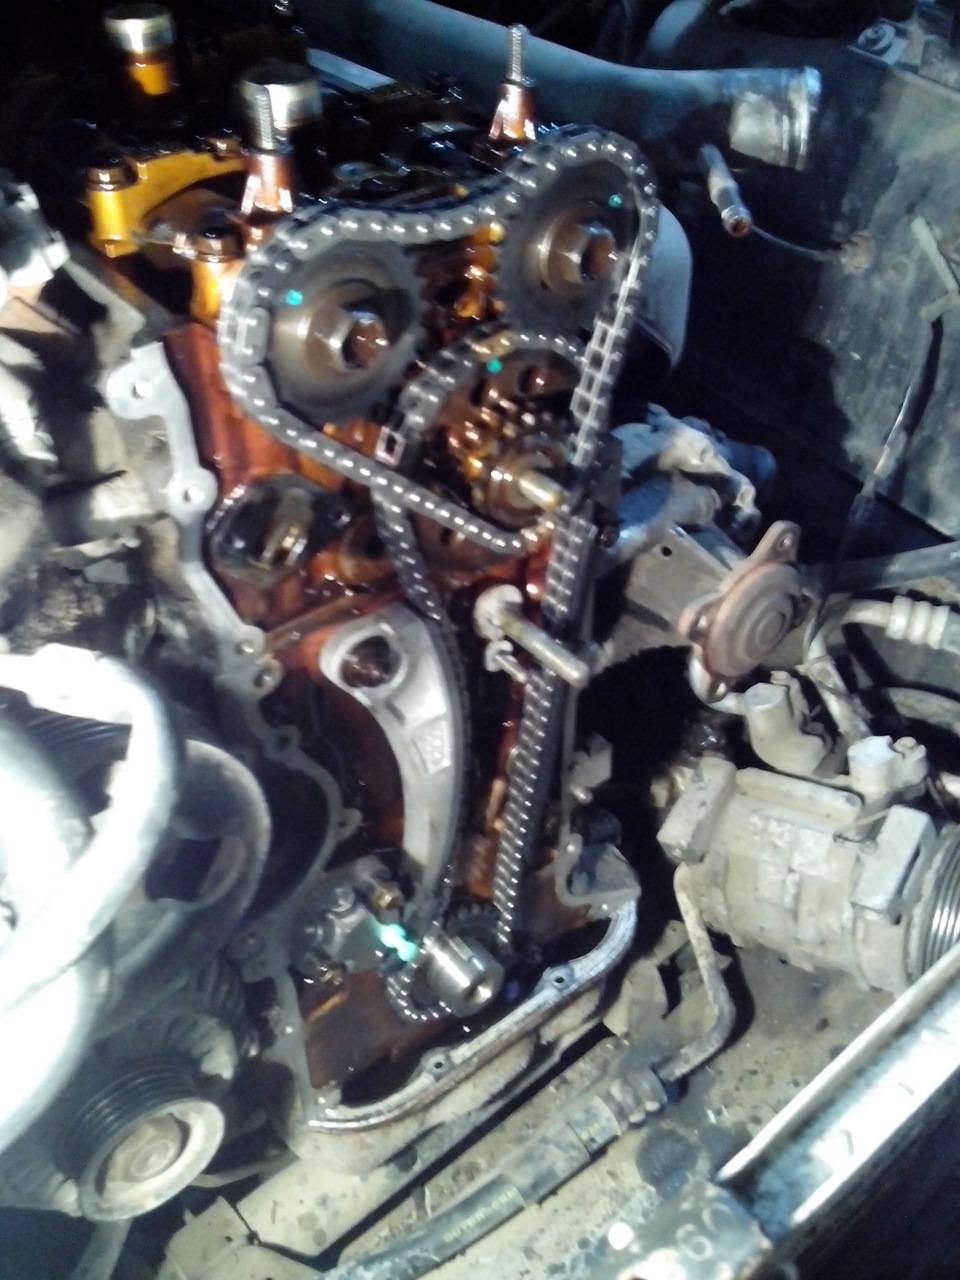 Двигатель b12s1 chevrolet, daewoo, ford, hyundai, kia, mazda, opel, технические характеристики, какое масло лить, ремонт двигателя b12s1, доработки и тюнинг, схема устройства, рекомендации по обслужив